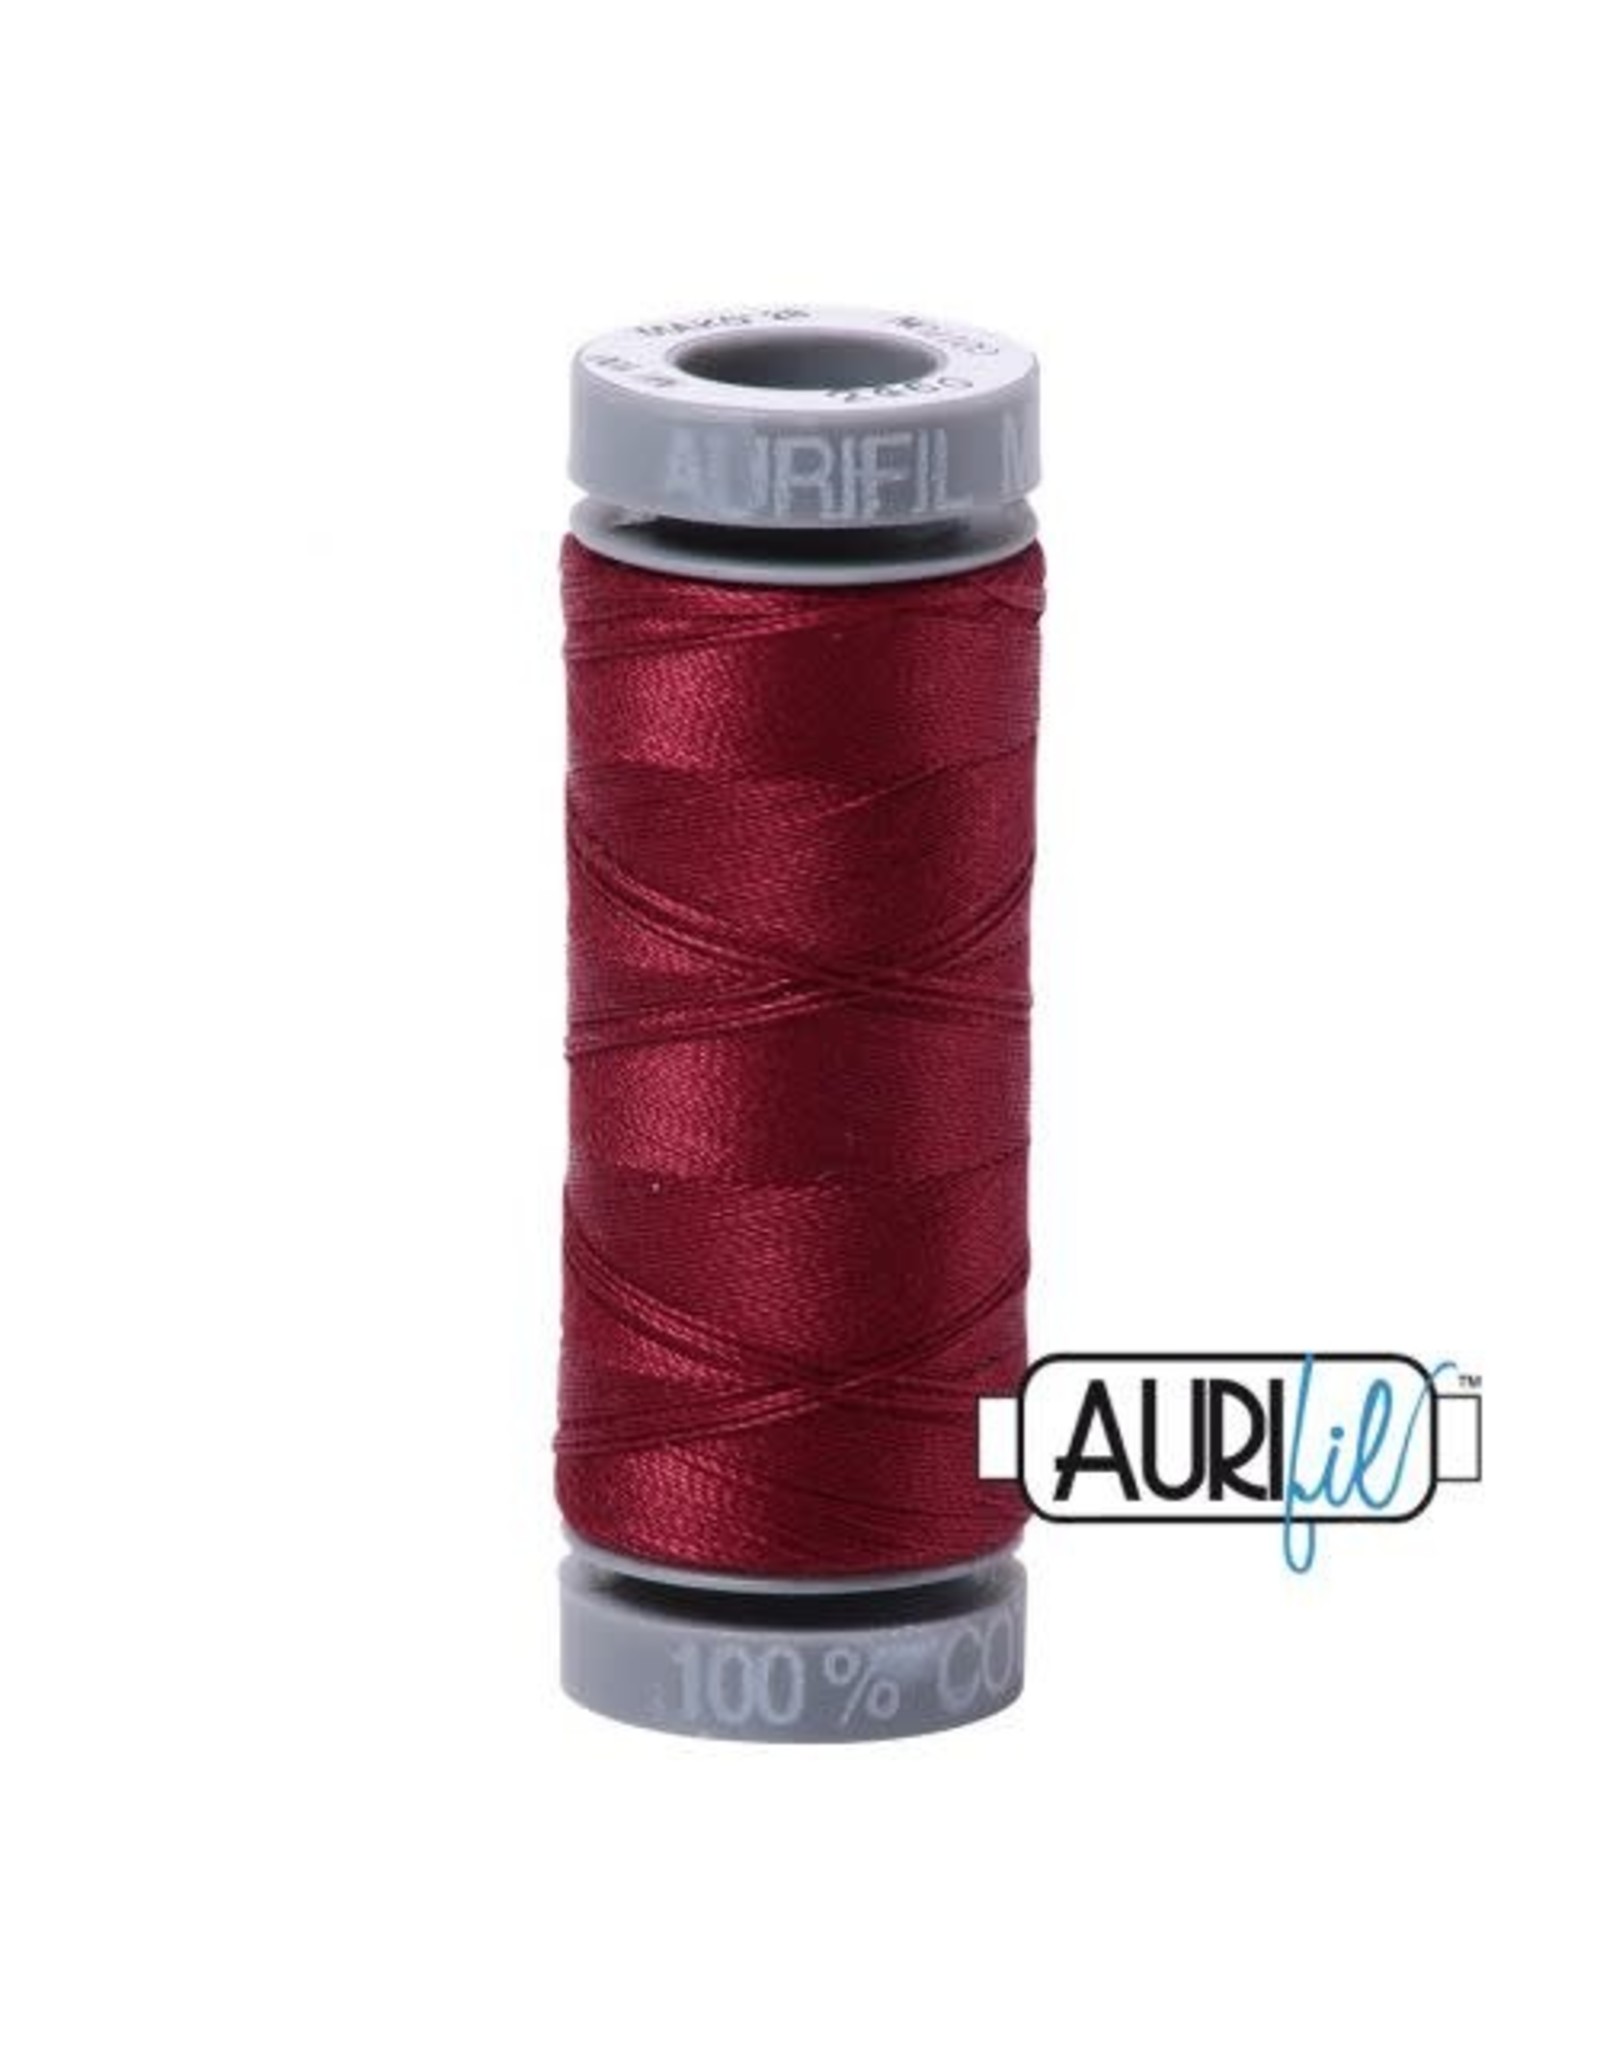 Aurifil Aurifil - Mako 28 - 100 m - 2460 - Dark Carmine Red